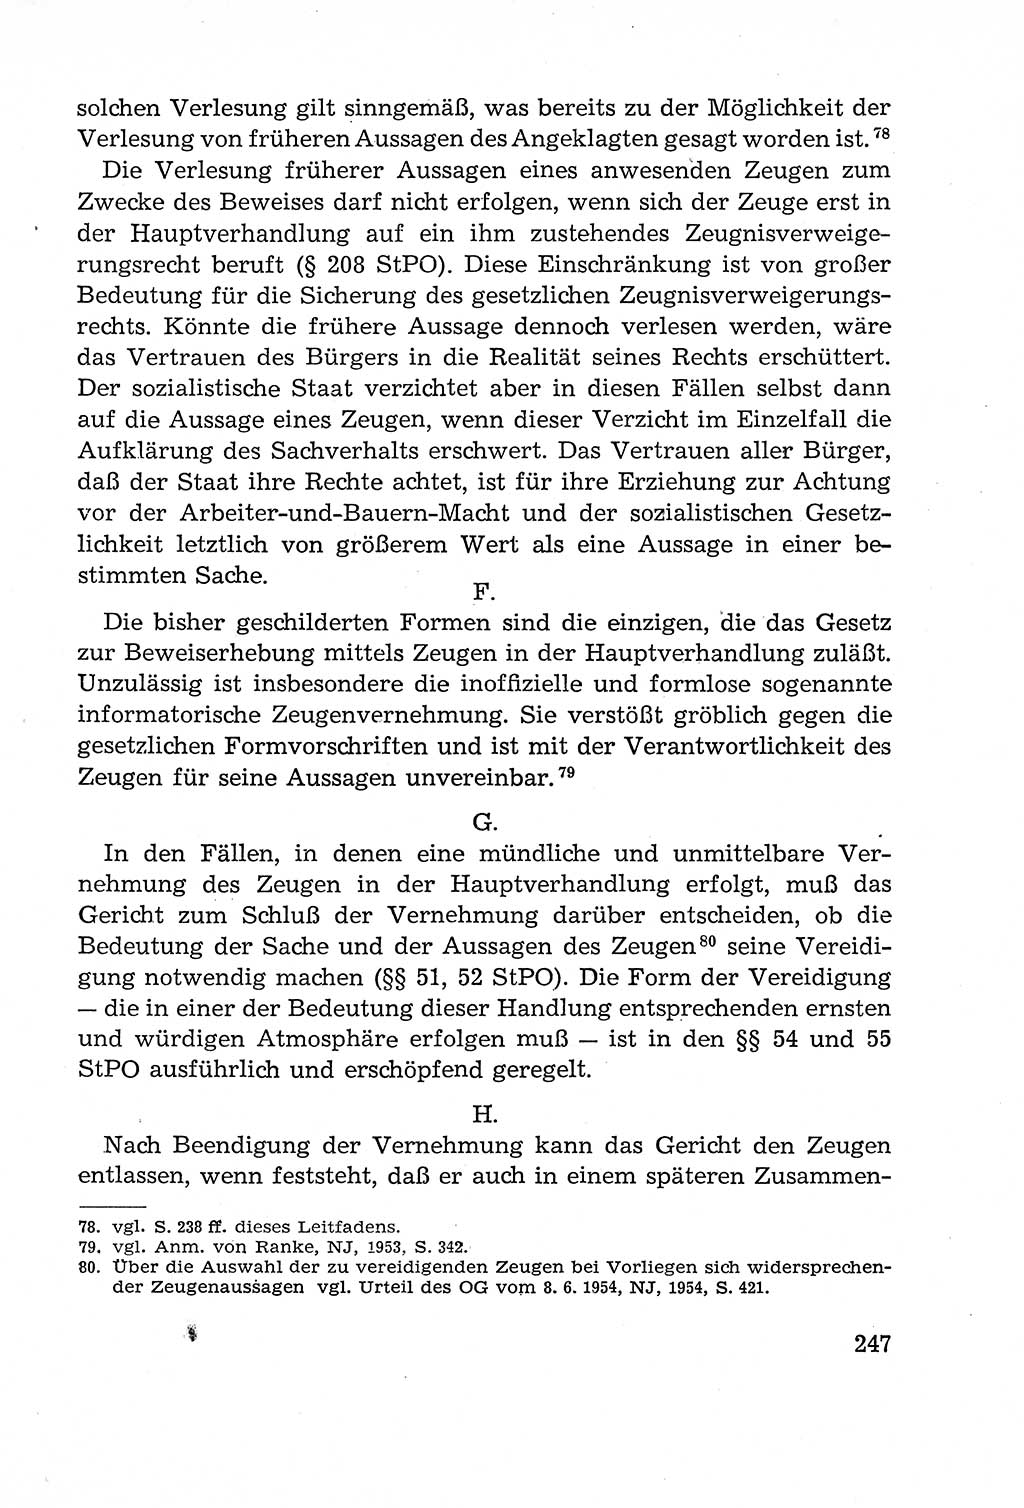 Leitfaden des Strafprozeßrechts der Deutschen Demokratischen Republik (DDR) 1959, Seite 247 (LF StPR DDR 1959, S. 247)